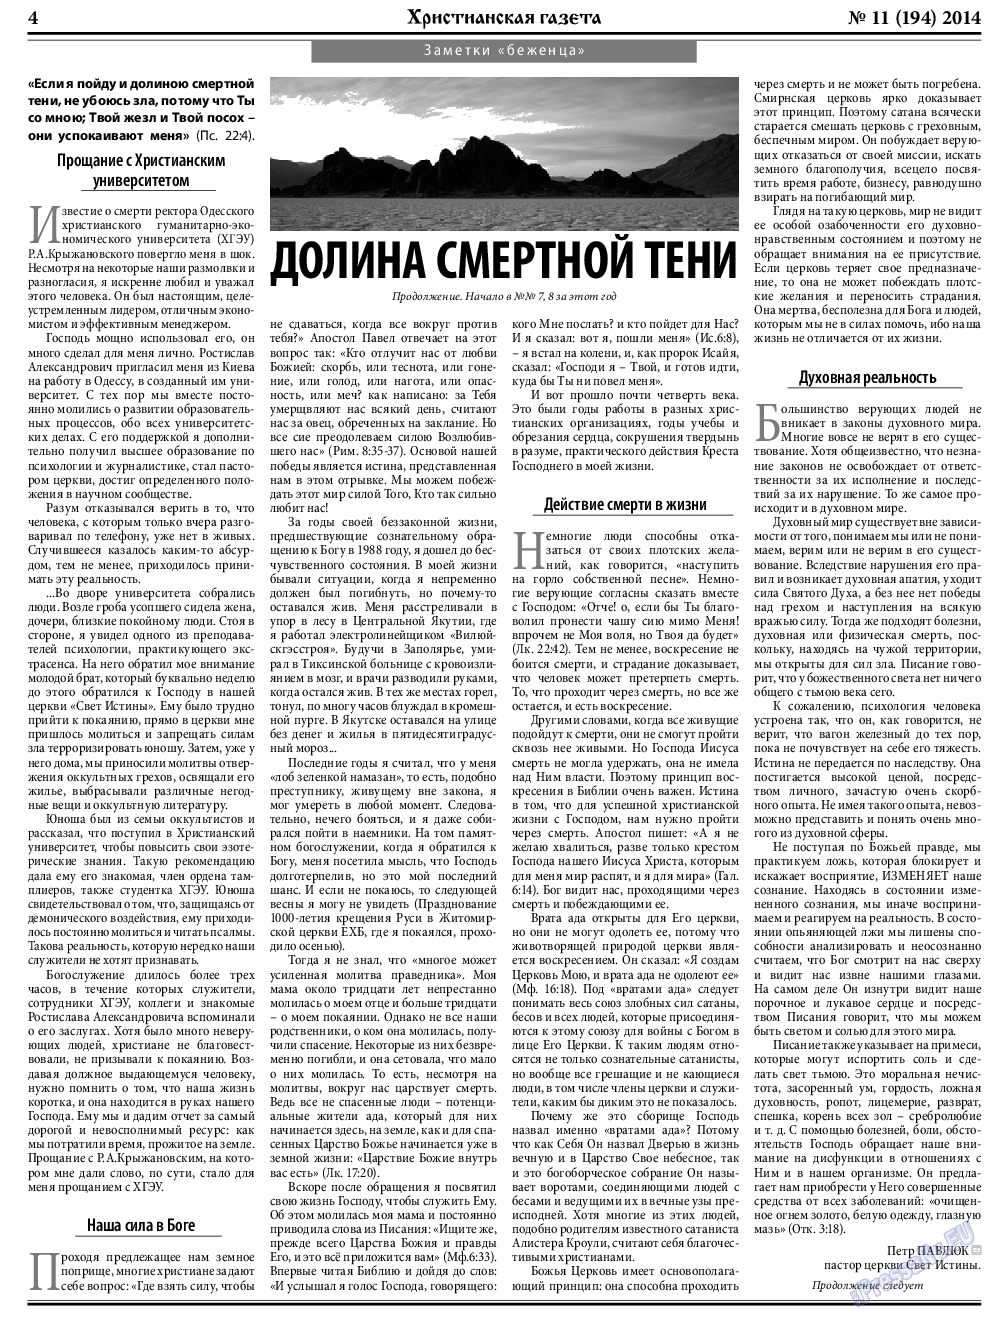 Христианская газета, газета. 2014 №11 стр.4